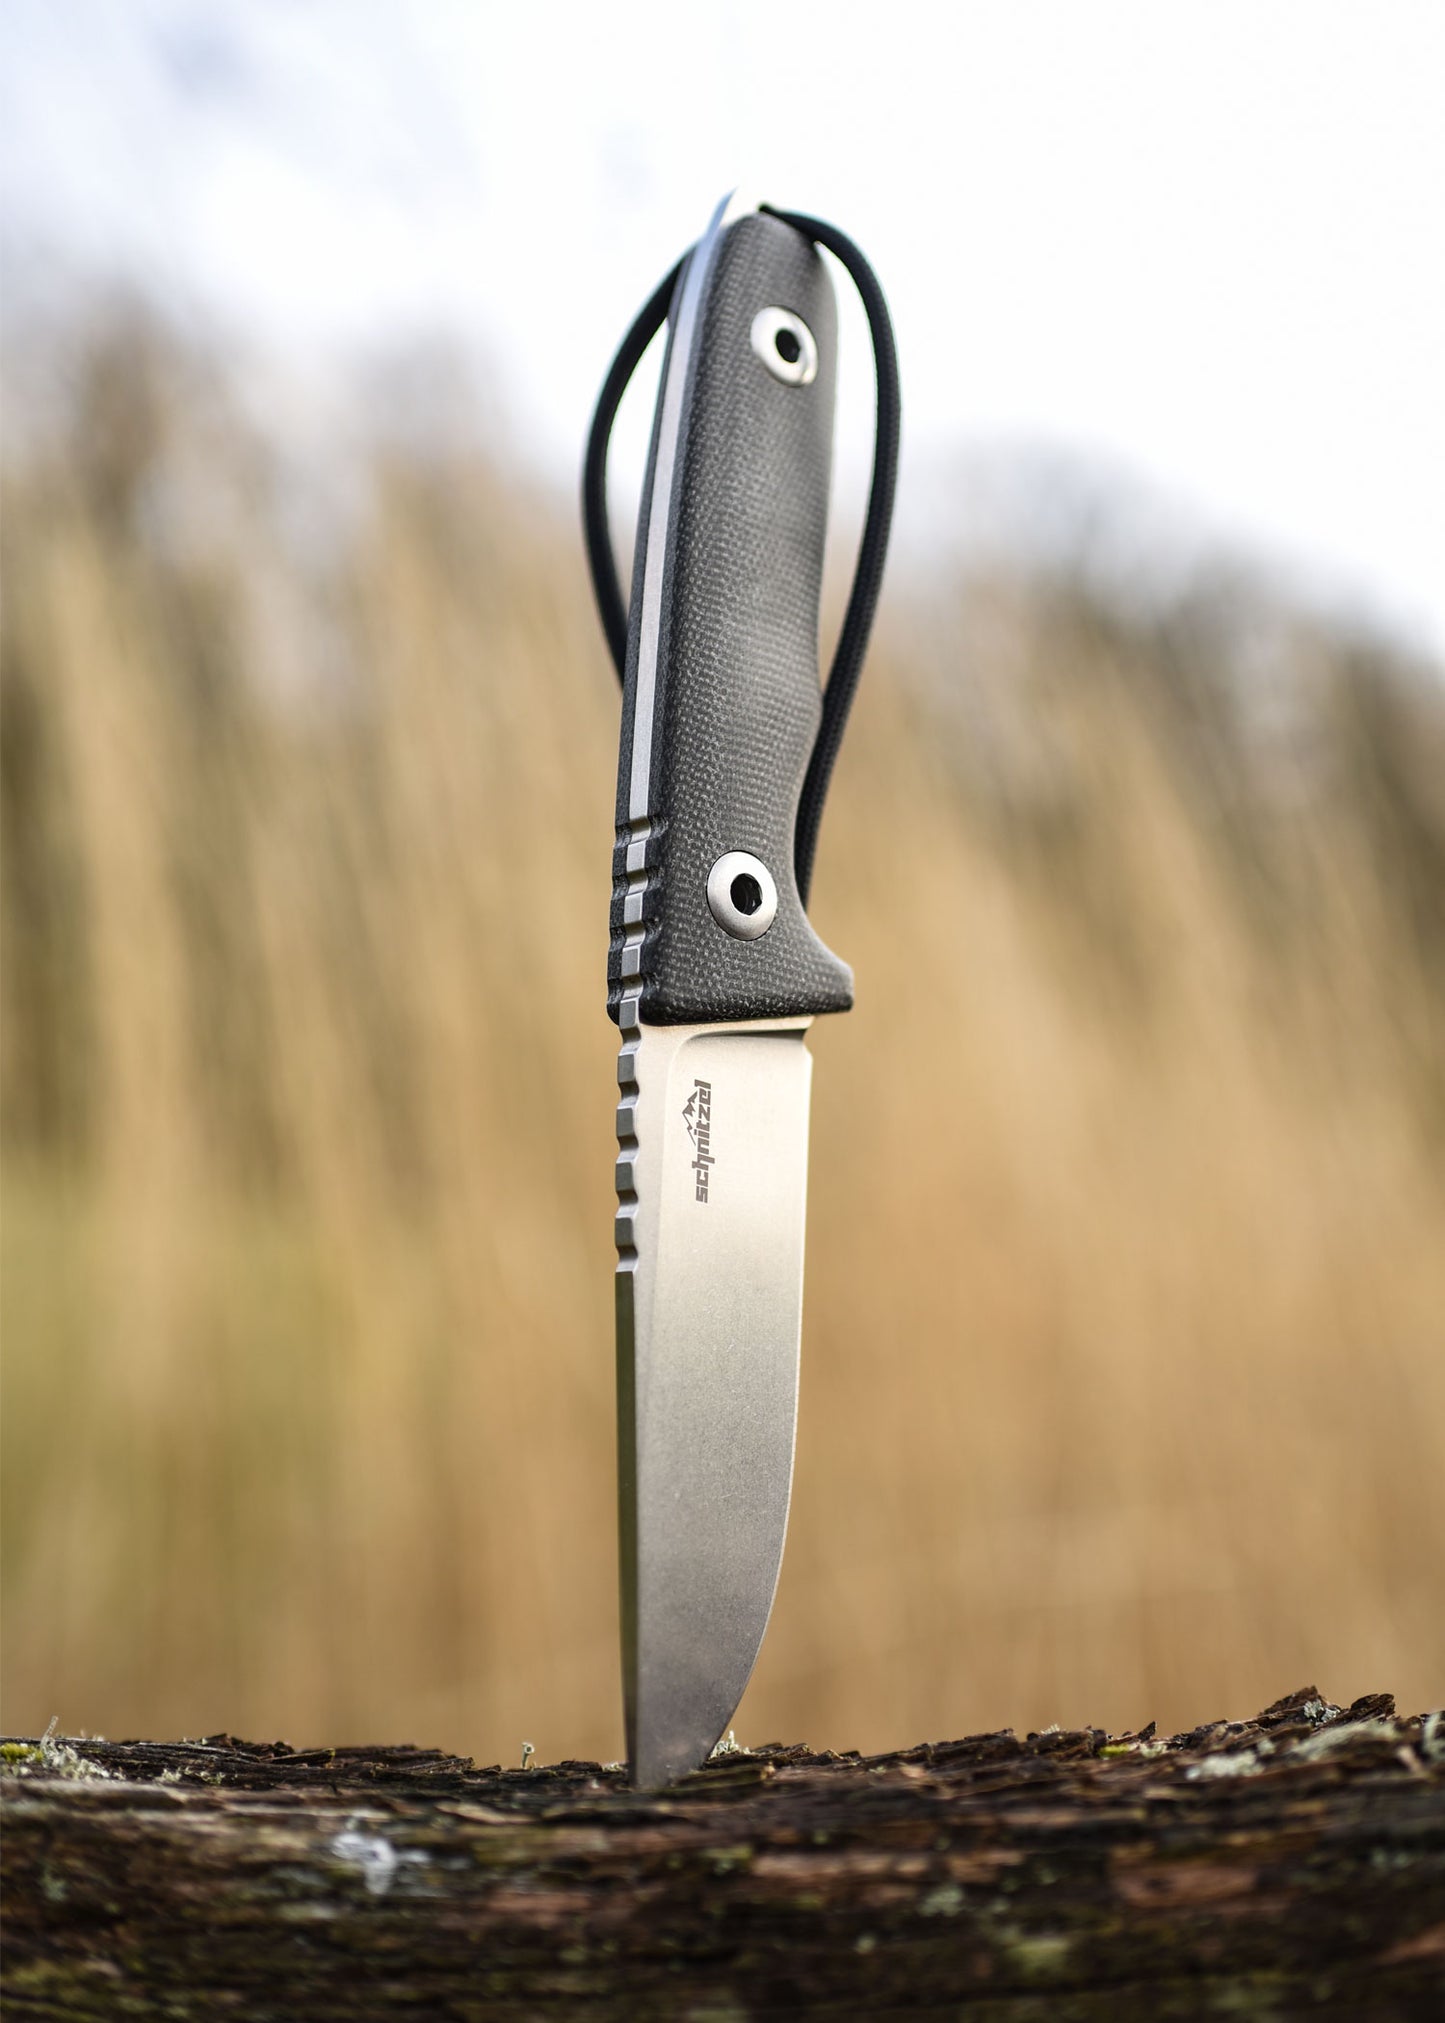 Couteau d'extérieur TRI édition spéciale - Schnitzel-T.A DEFENSE